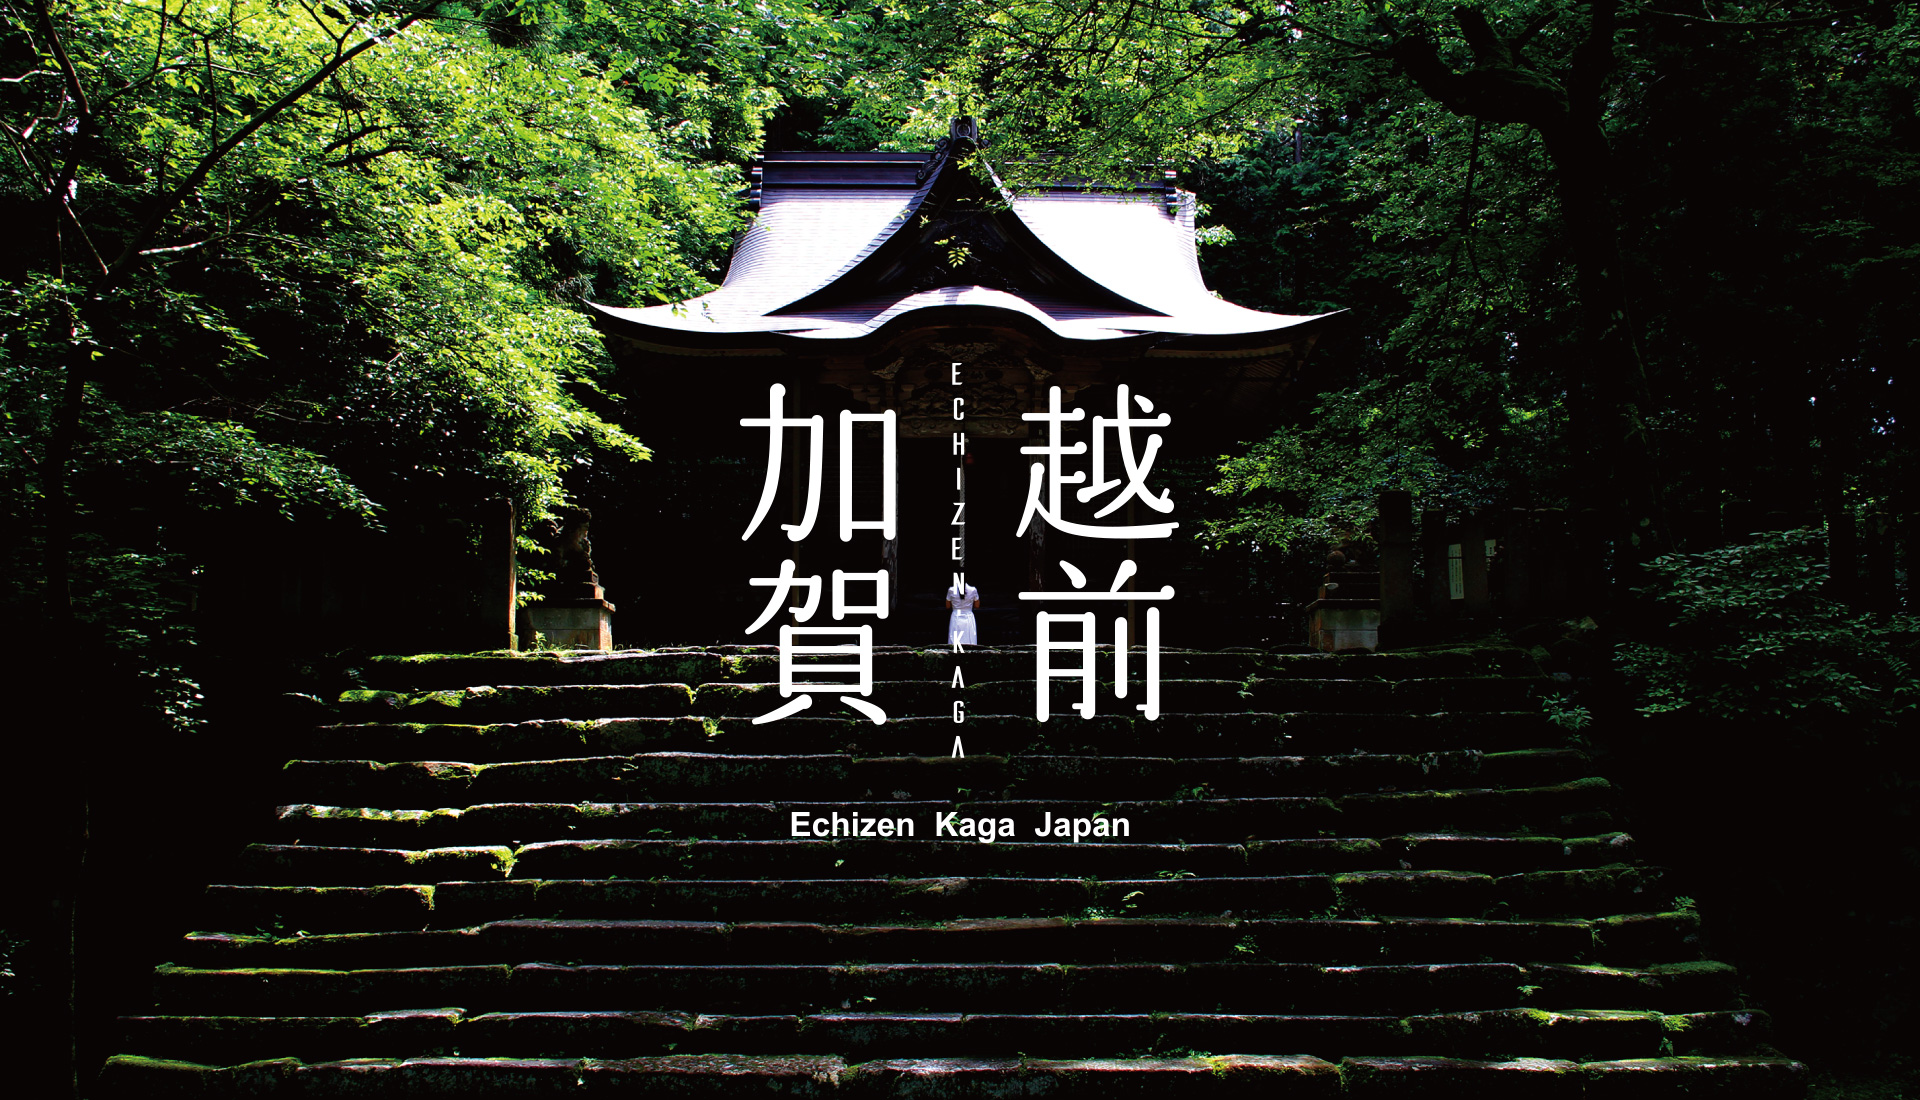 ECHIZEN KAGA JAPAN